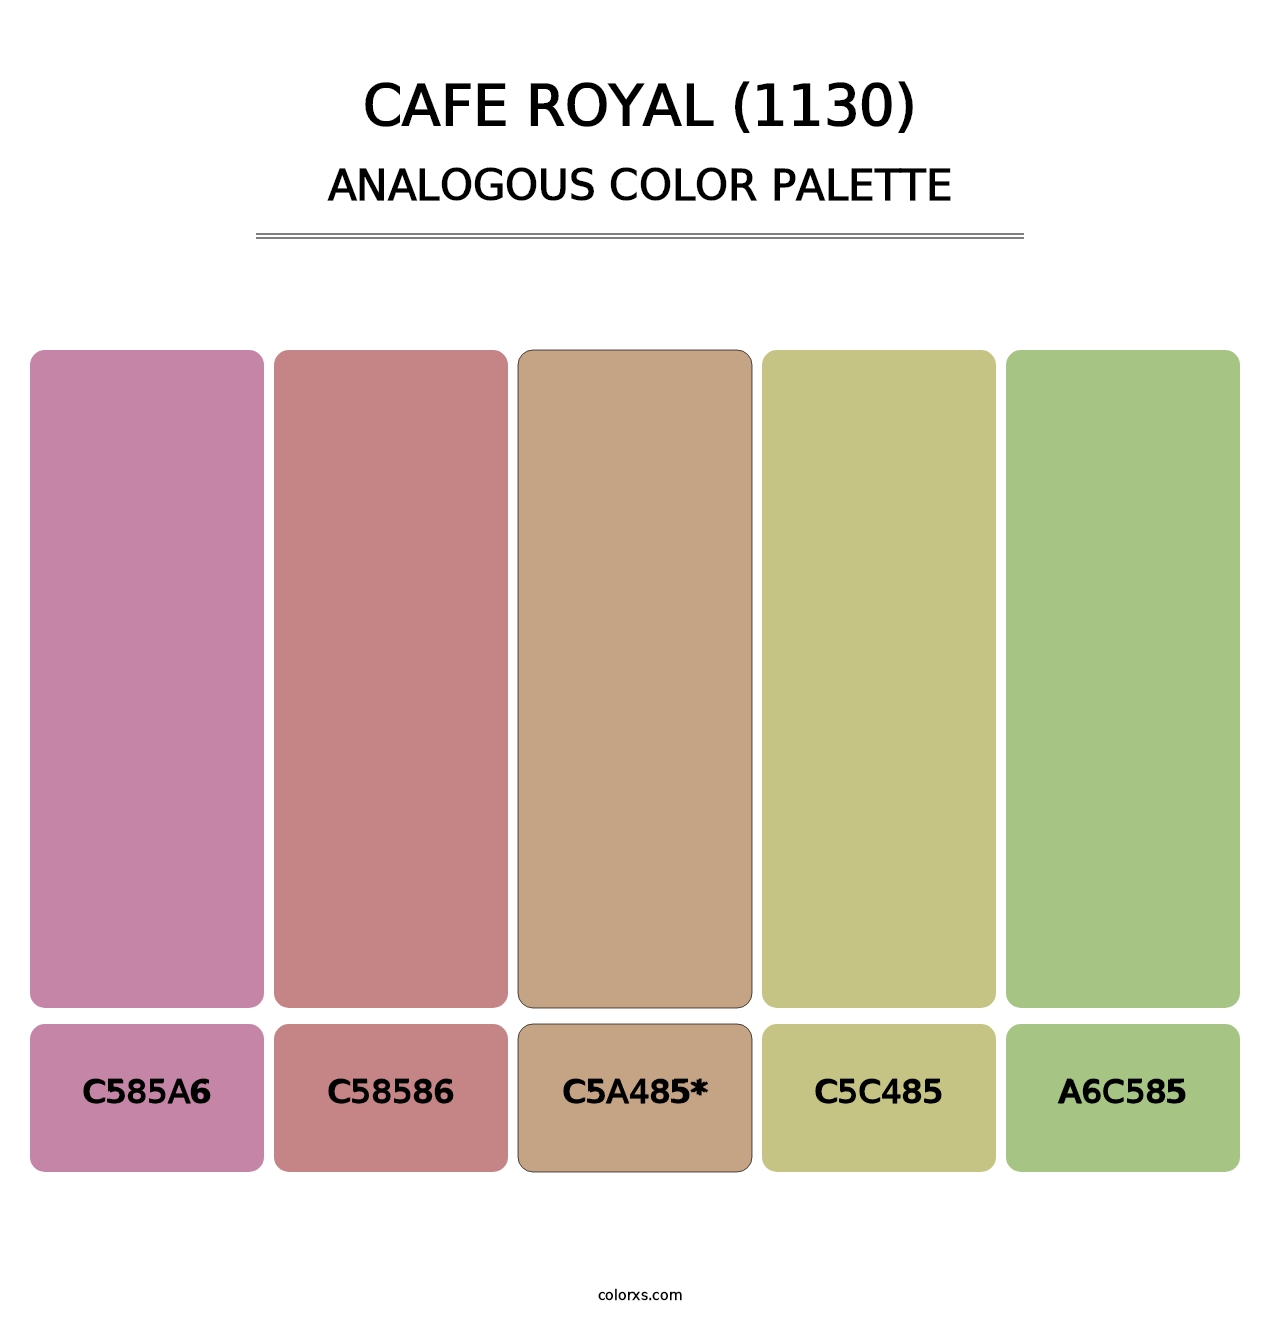 Cafe Royal (1130) - Analogous Color Palette